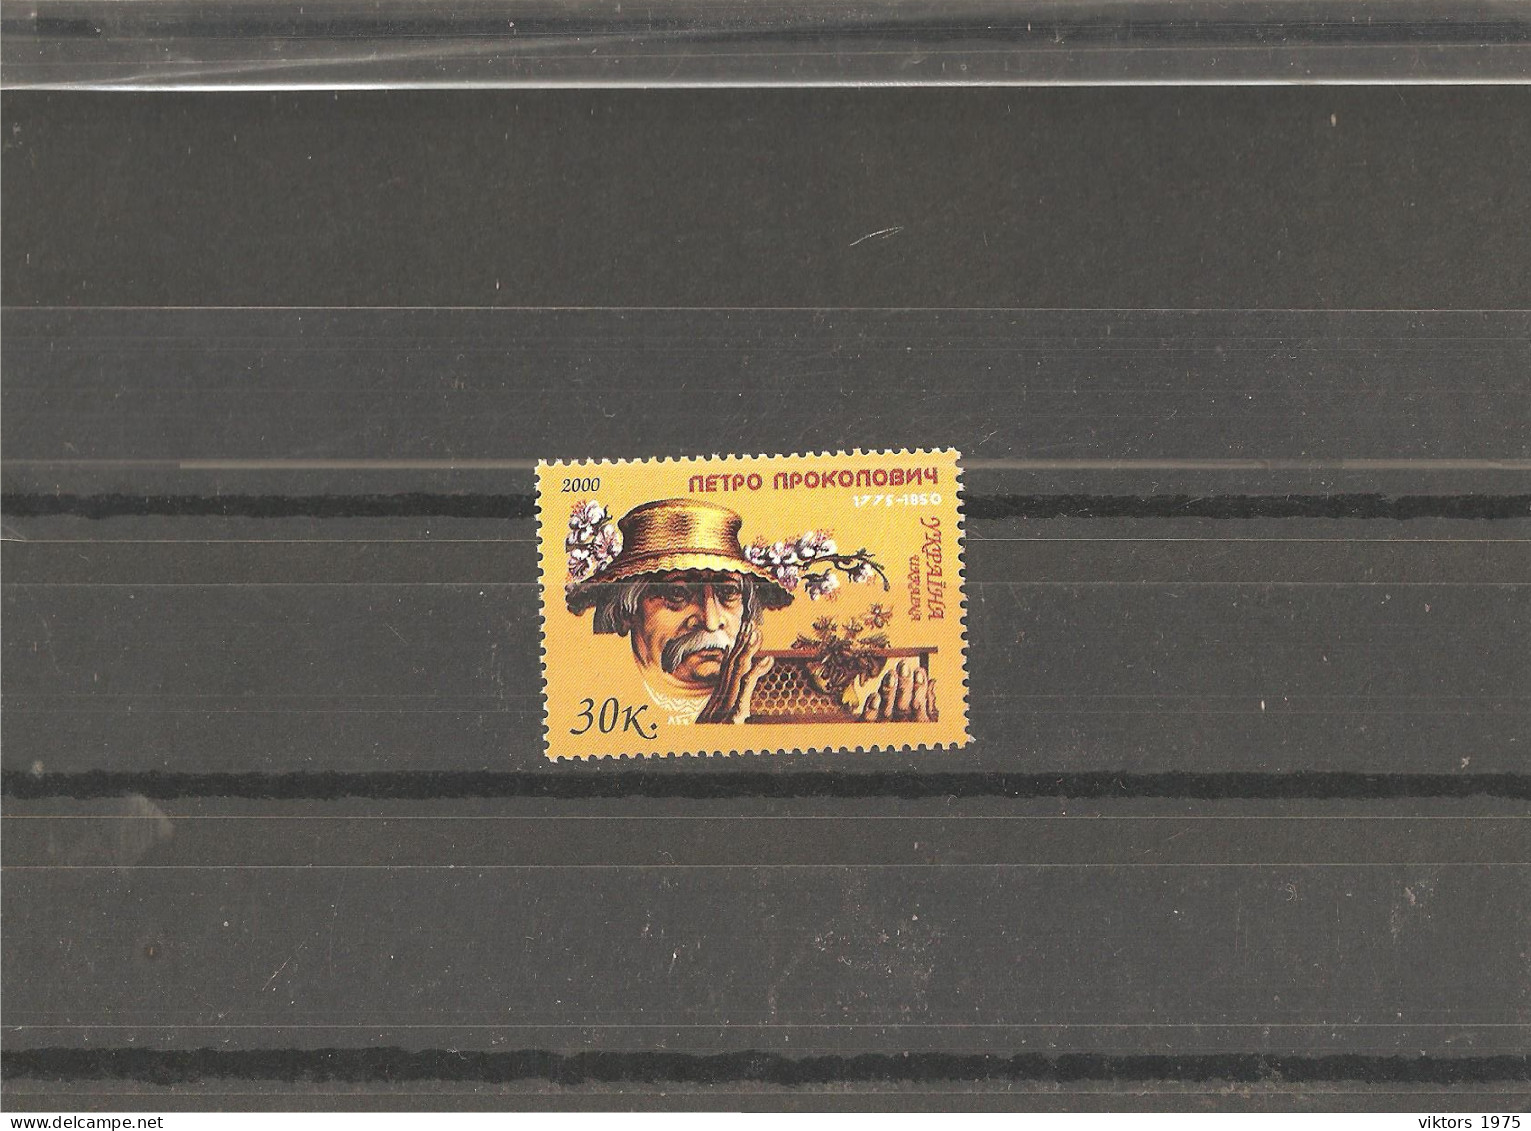 MNH Stamp Nr.387 In MICHEL Catalog - Ukraine